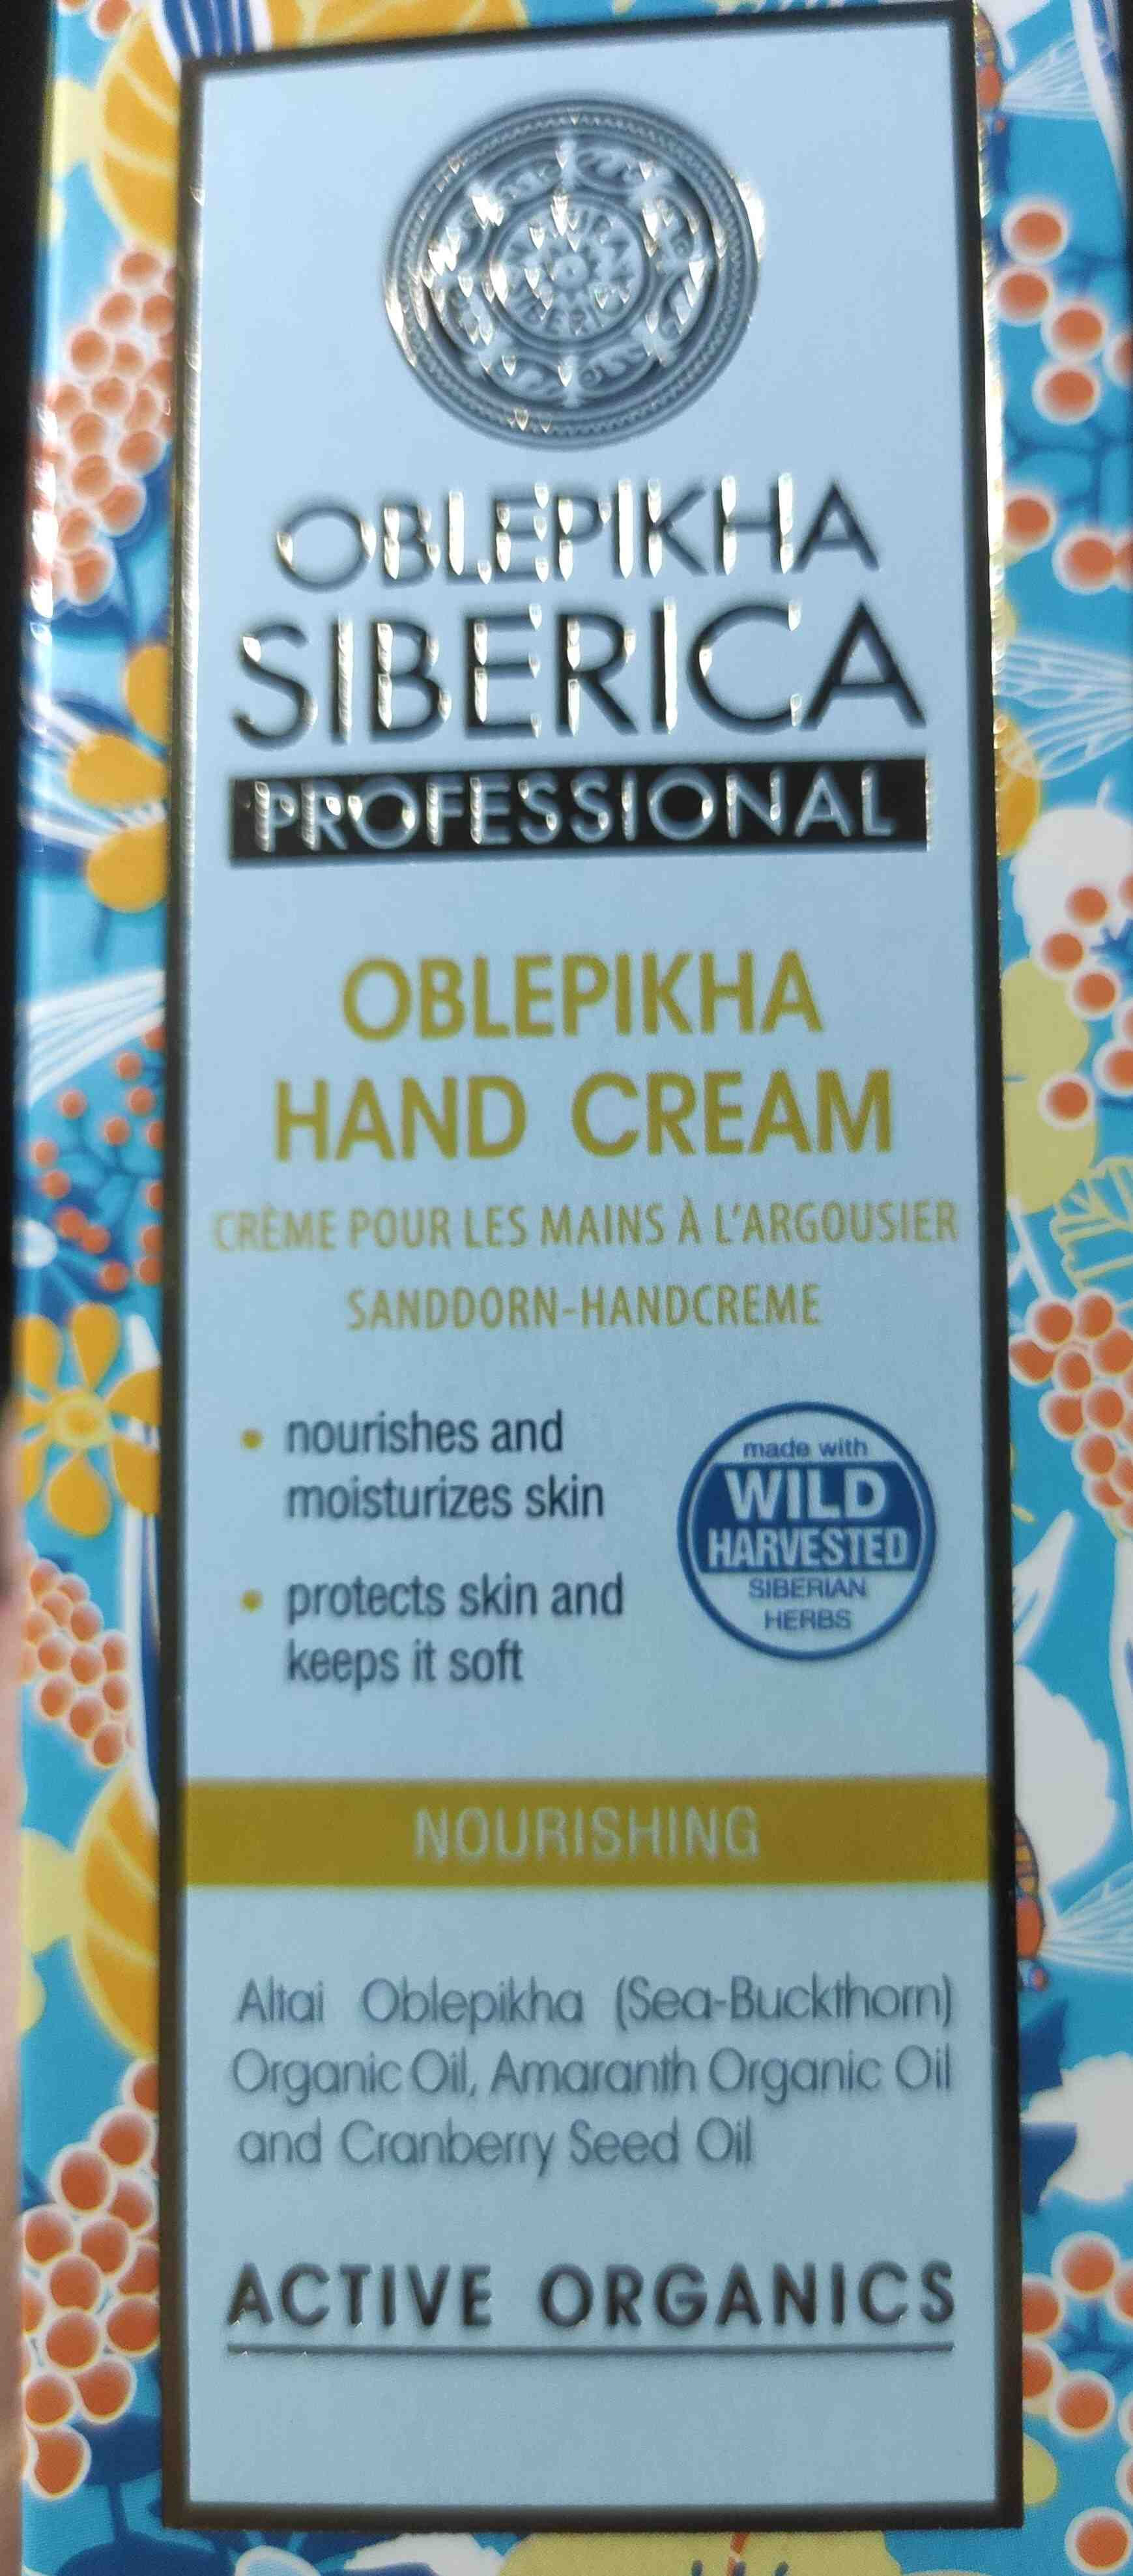 Oblekpikha Hand Cream - Product - en